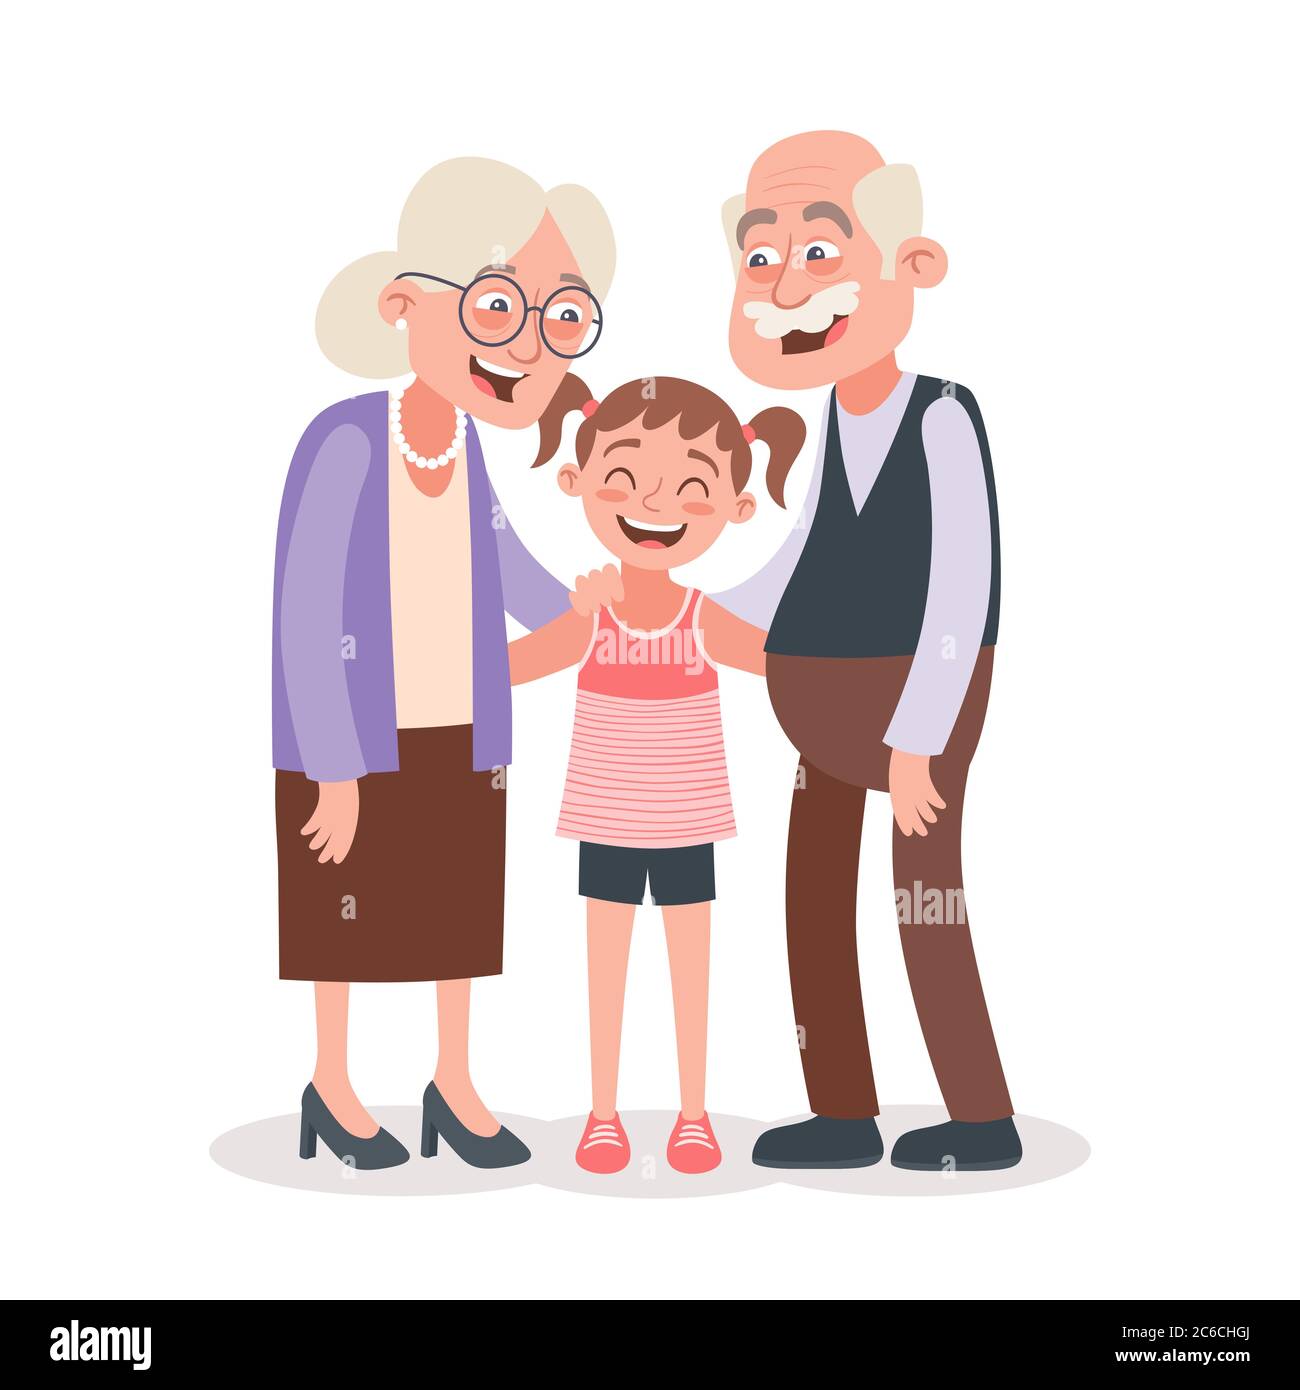 Großeltern und Enkelin Porträt. Großeltern Tageskonzept. Vektorgrafik im Cartoon-Stil, isoliert auf weißem Hintergrund. Stock Vektor